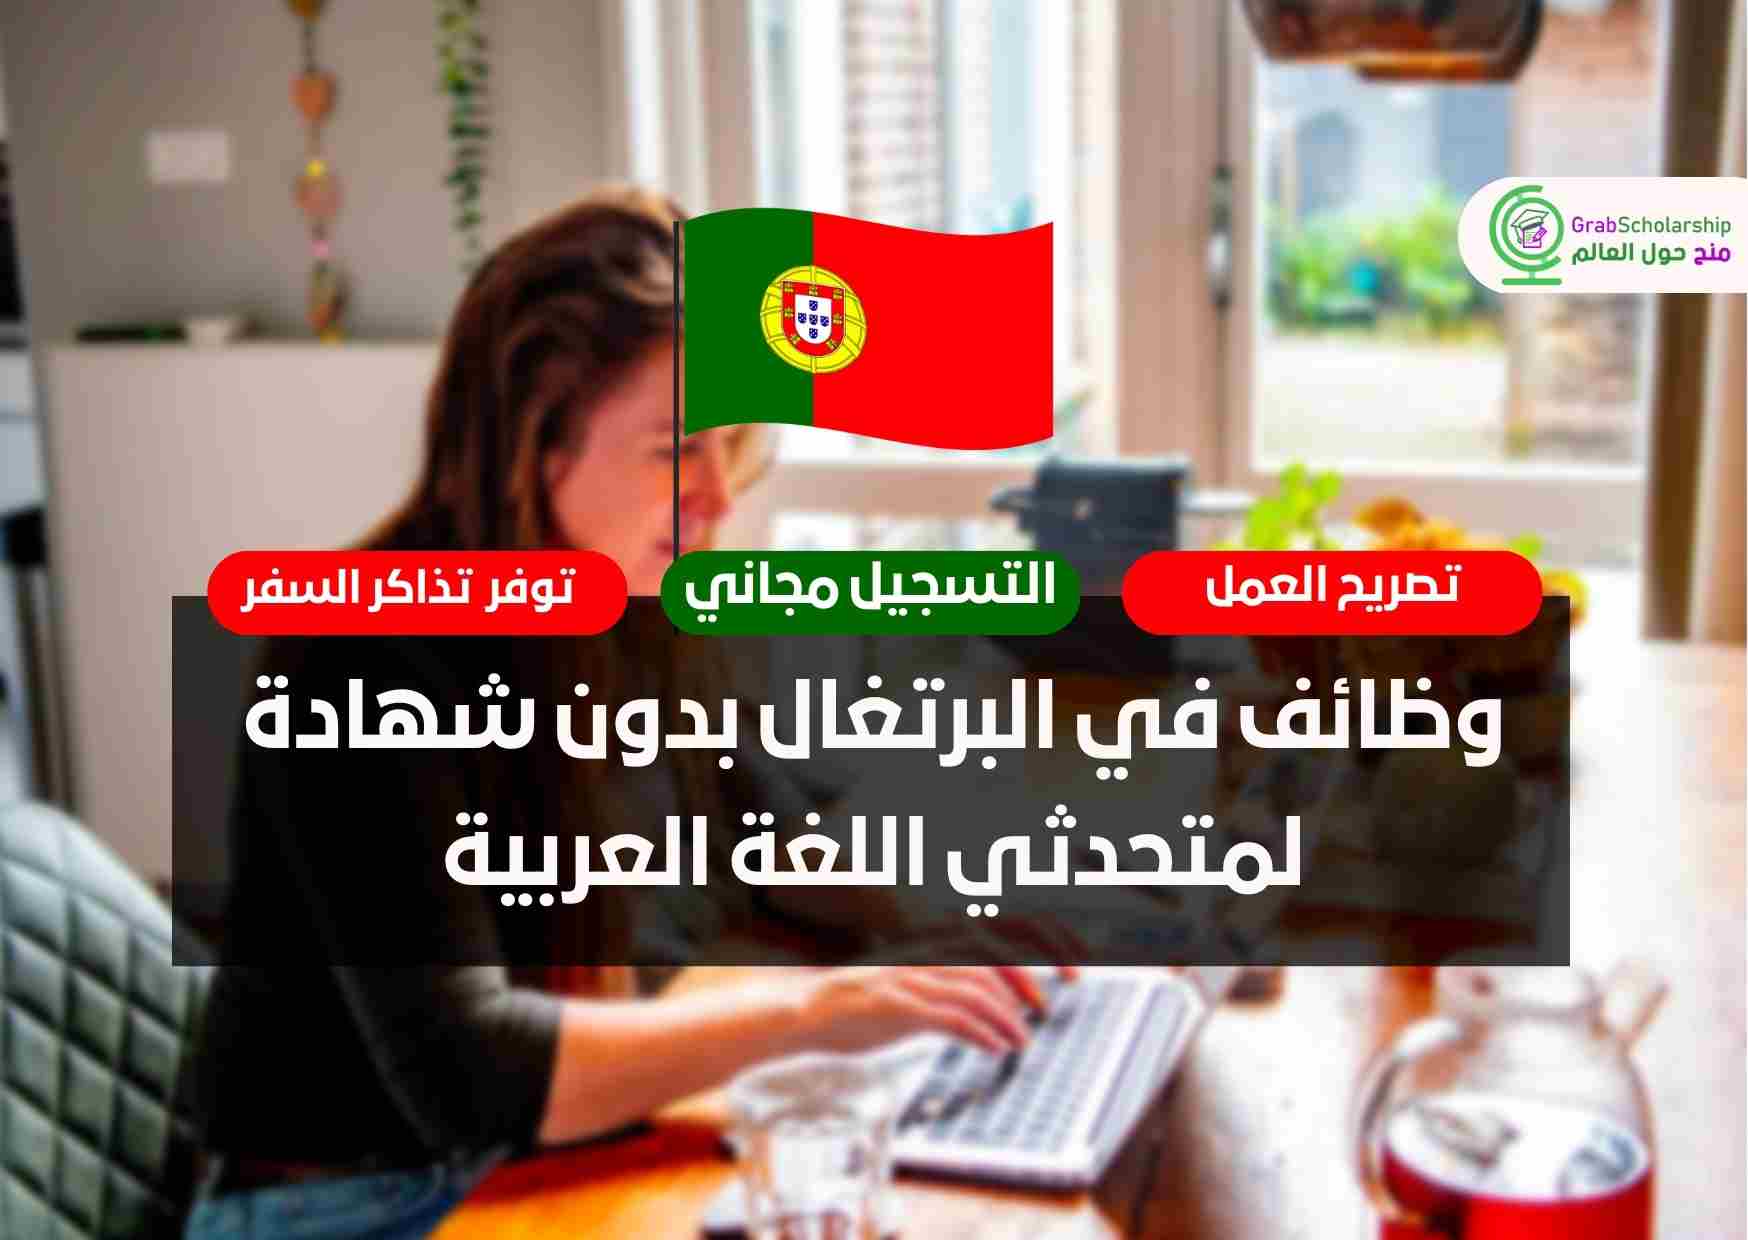 وظائف في البرتغال بدون شهادة لمتحدثي اللغة العربية